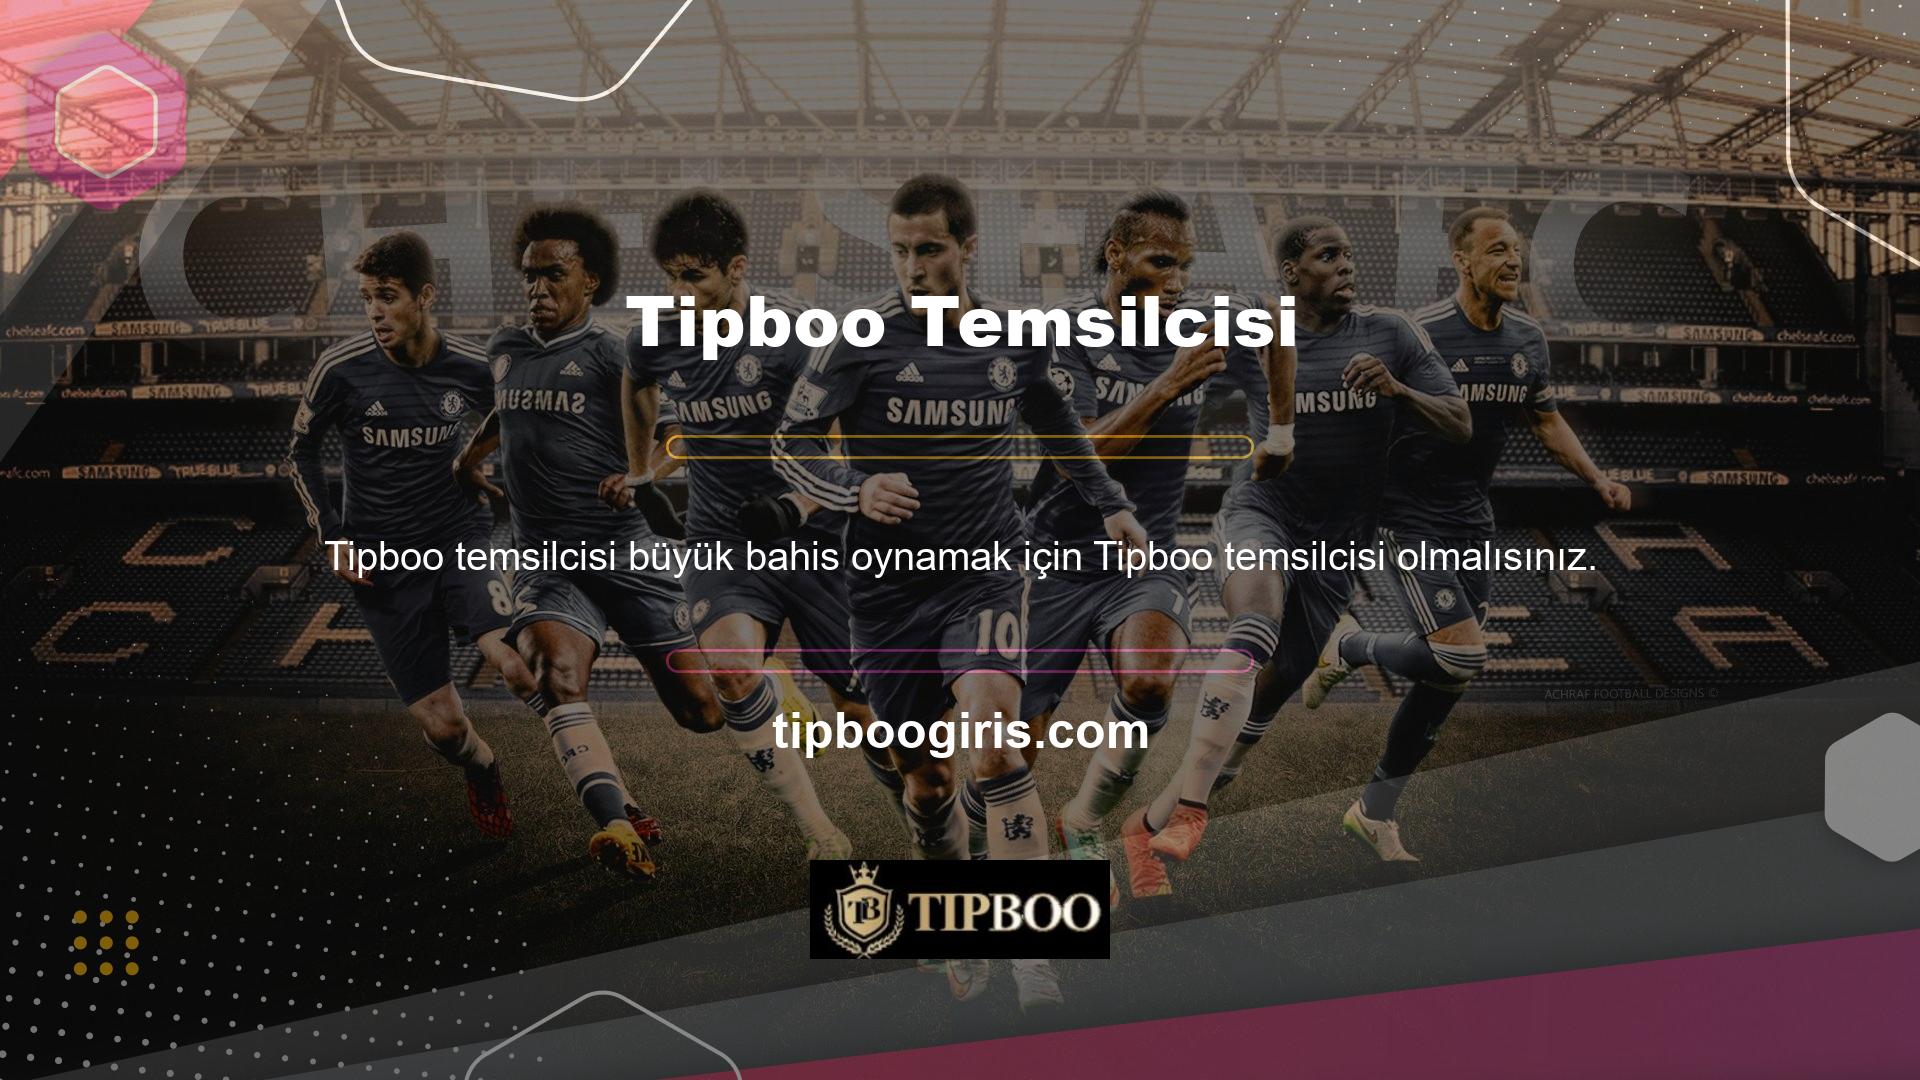 Tipboo web sitesi, tüm spor bahis ihtiyaçlarınız için çok çeşitli seçenekler sunmaya çalışmaktadır